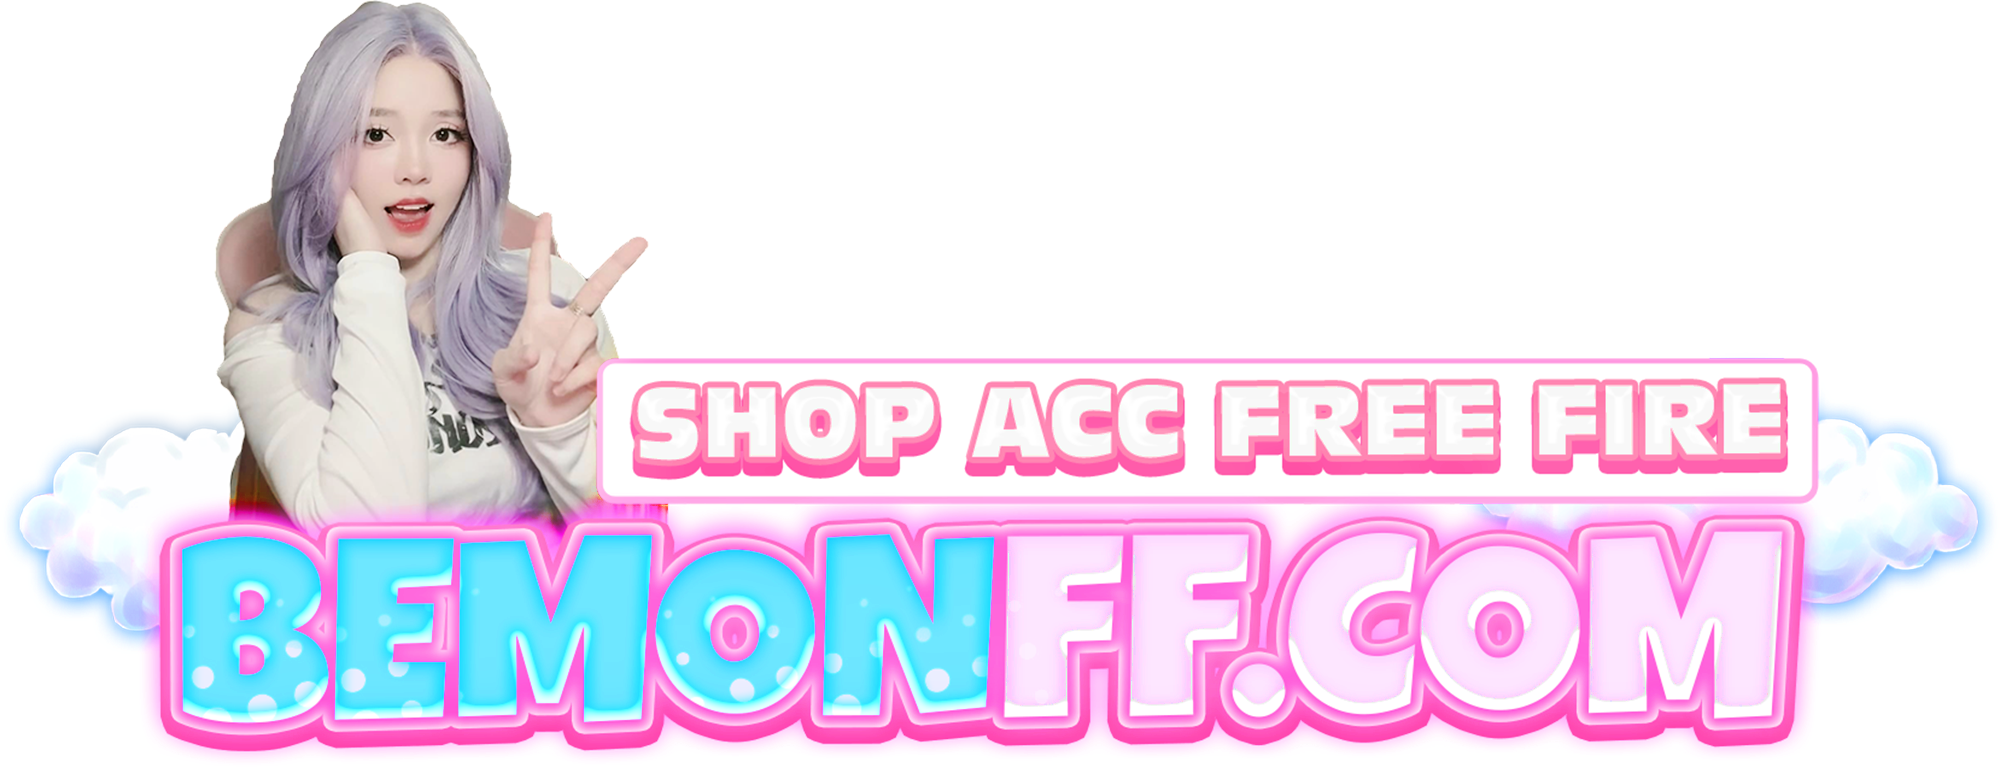 Logo Shop Acc FF Của BÉ Mon- Nơi Cung Cấp Tài Khoản Free Fire Uy Tín, Giá Rẻ